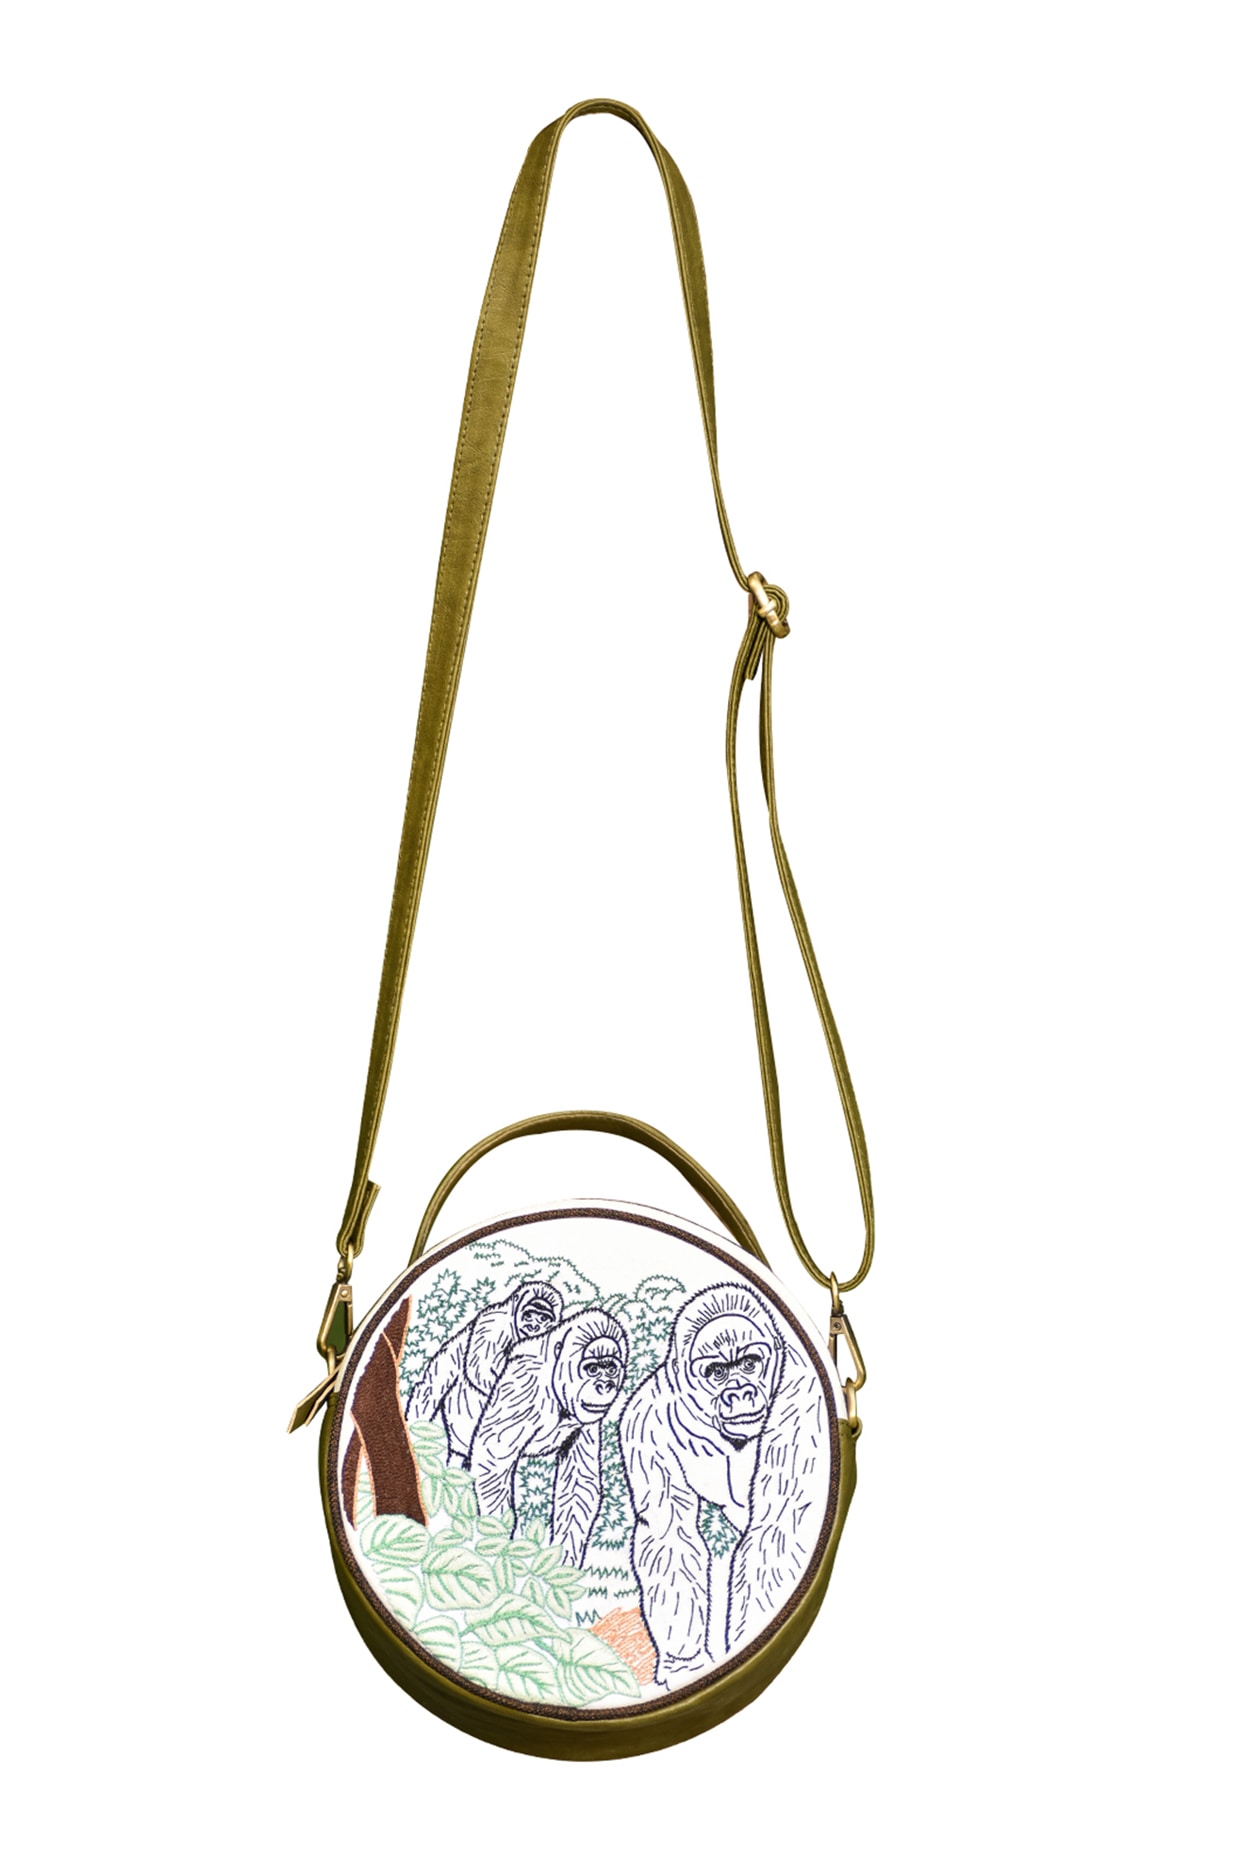 Handbags - Coco Chanel